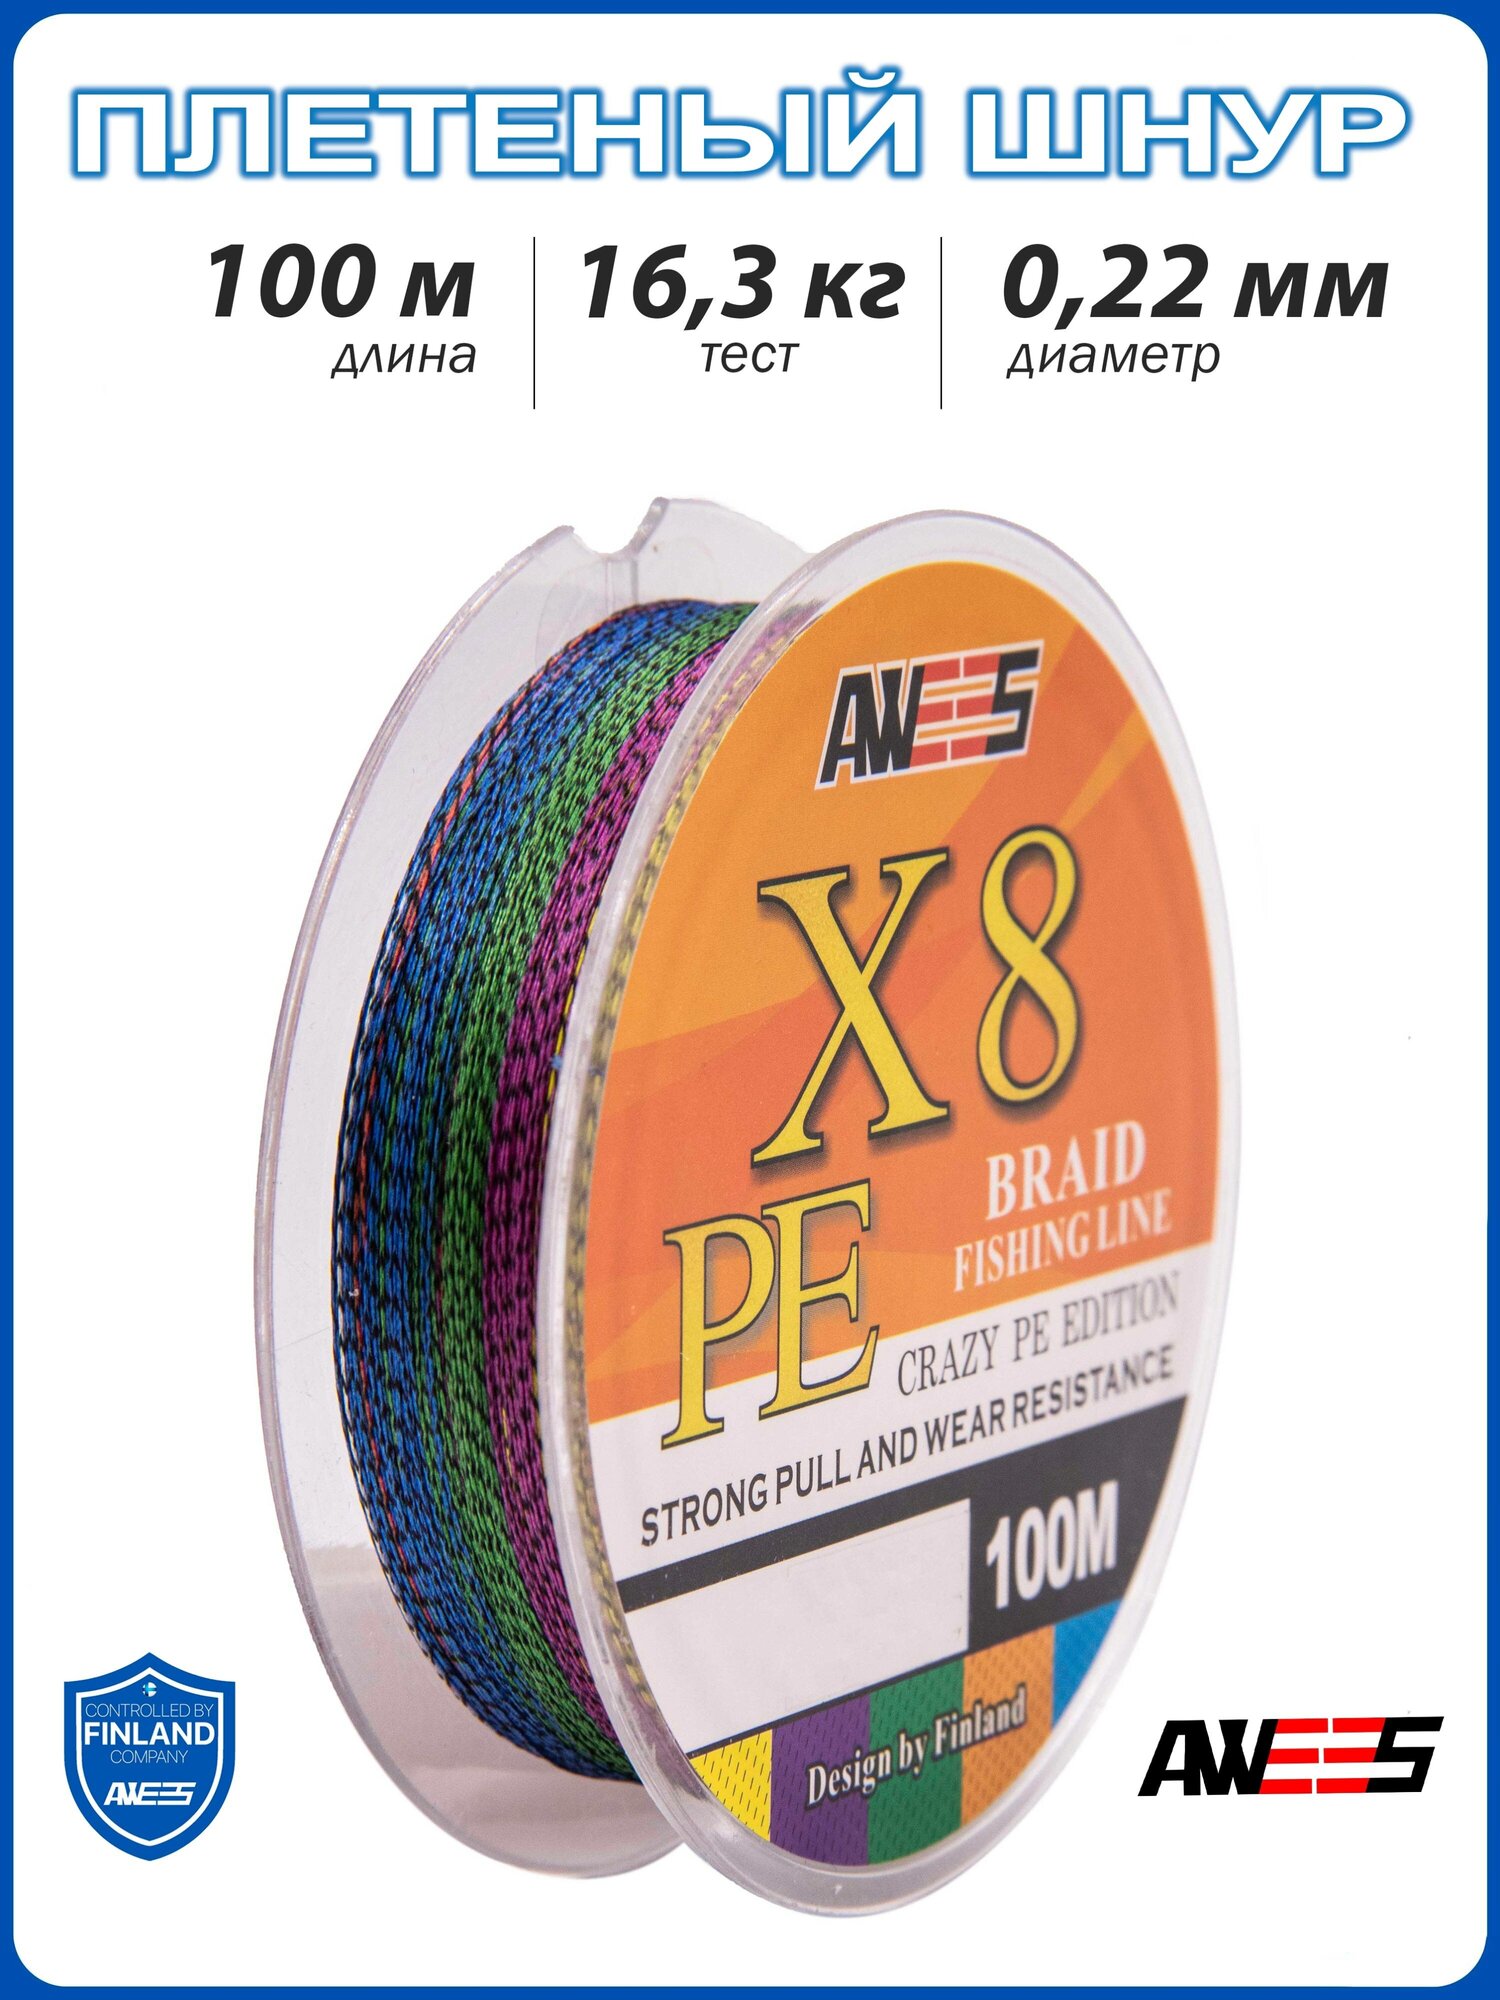 Плетеный шнур 8-жильный AWEES PE-X8 0.22, тест 16.3 кг, 100 м, колор микс/плетёнка/леска плетеная/леска/шнур для рыбалки